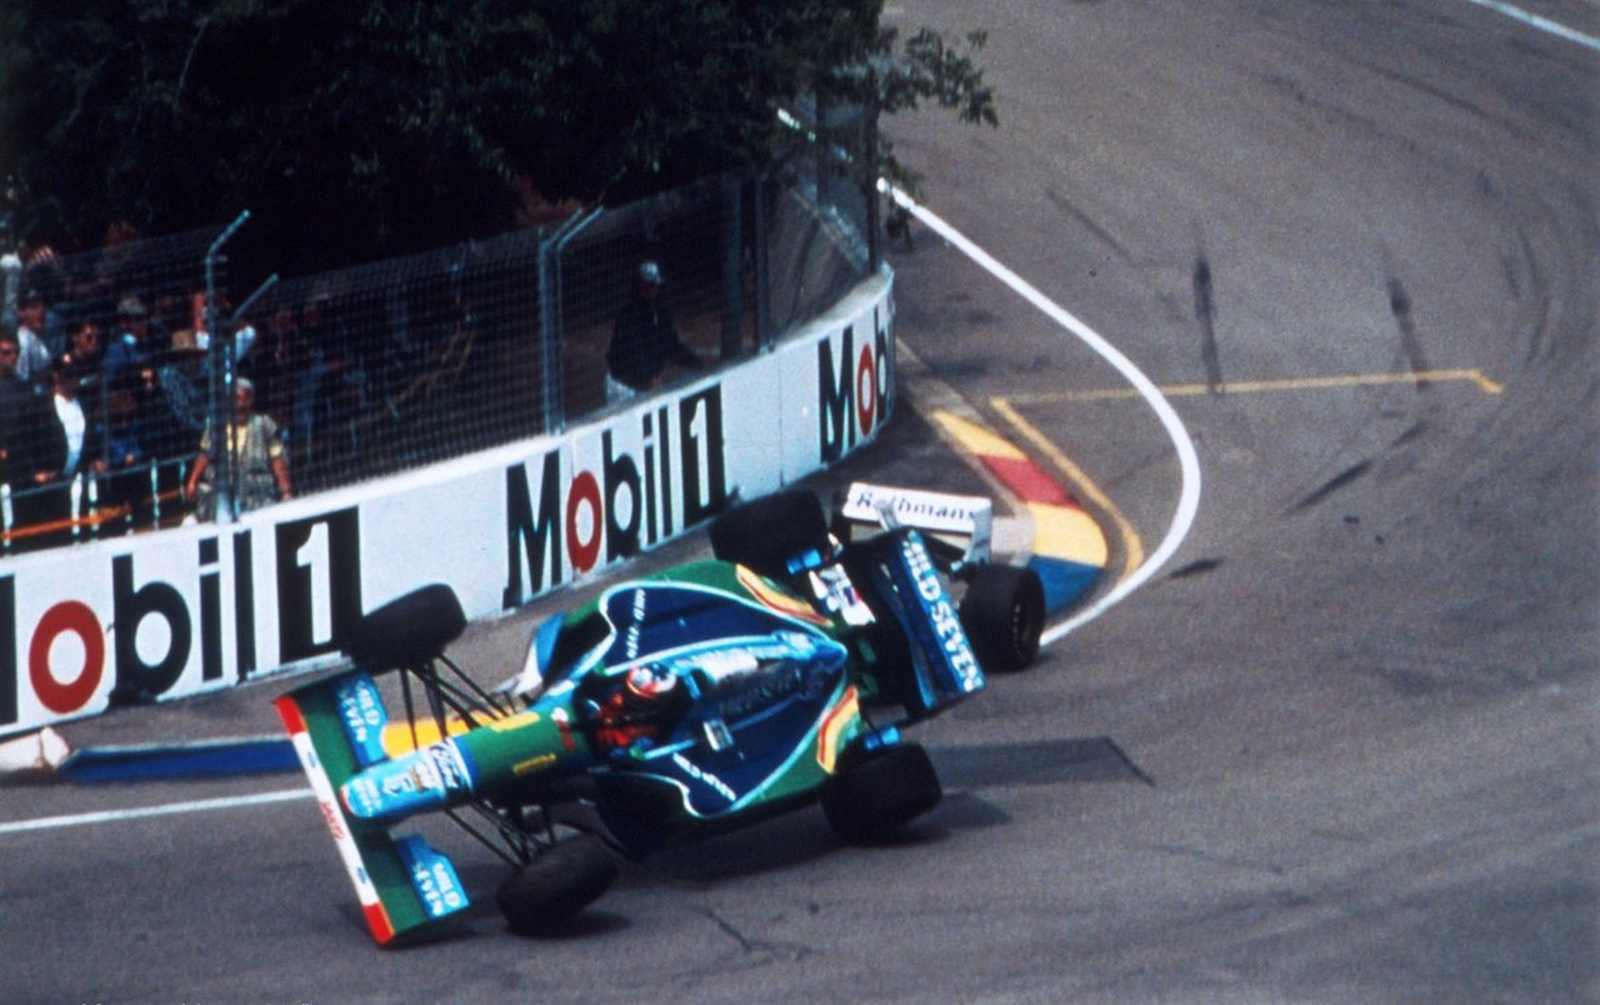 De forma controversa, Michael Schumacher ganhou o campeonato de 1994 após acidente com Damon Hill